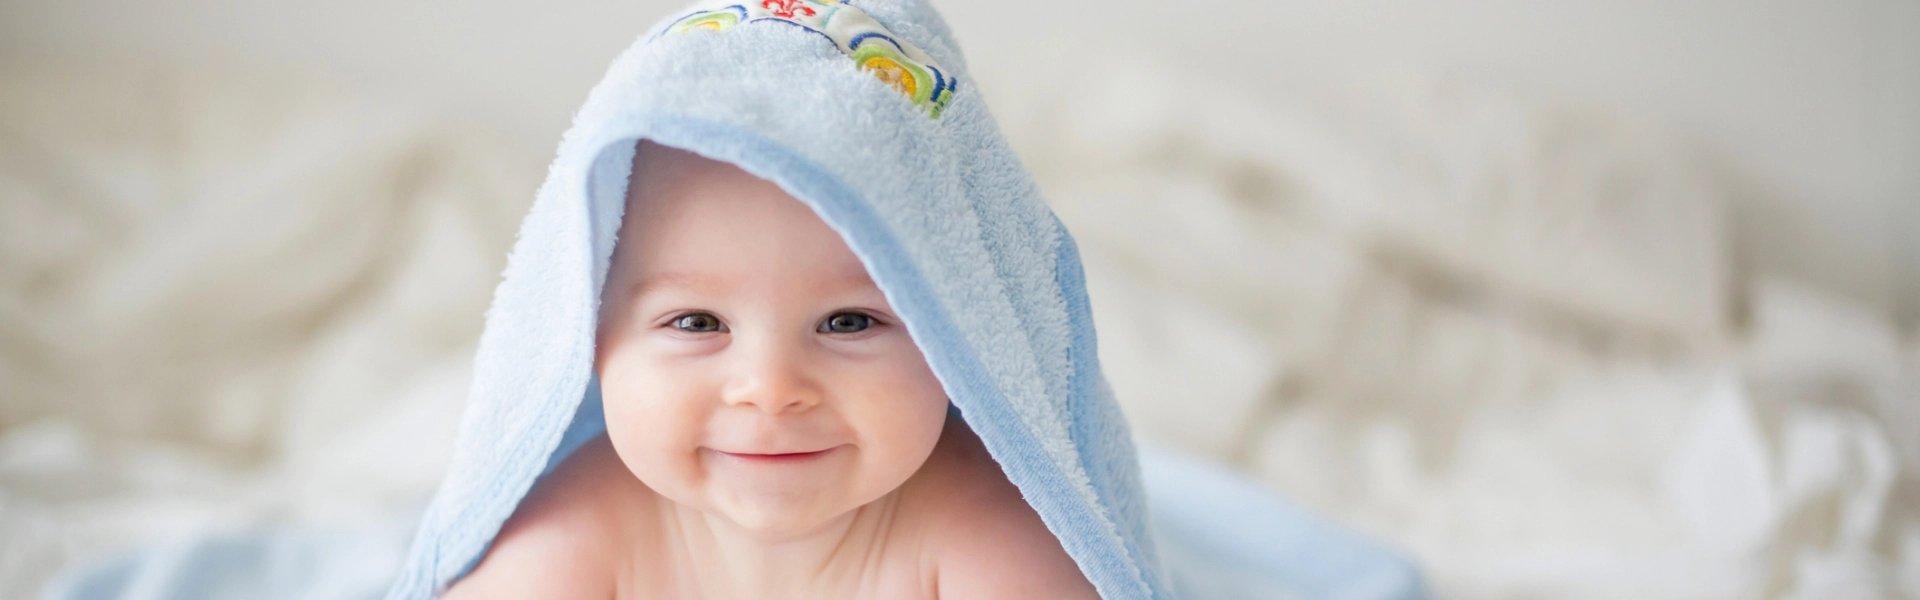 dziecko z ręcznikiem na głowie